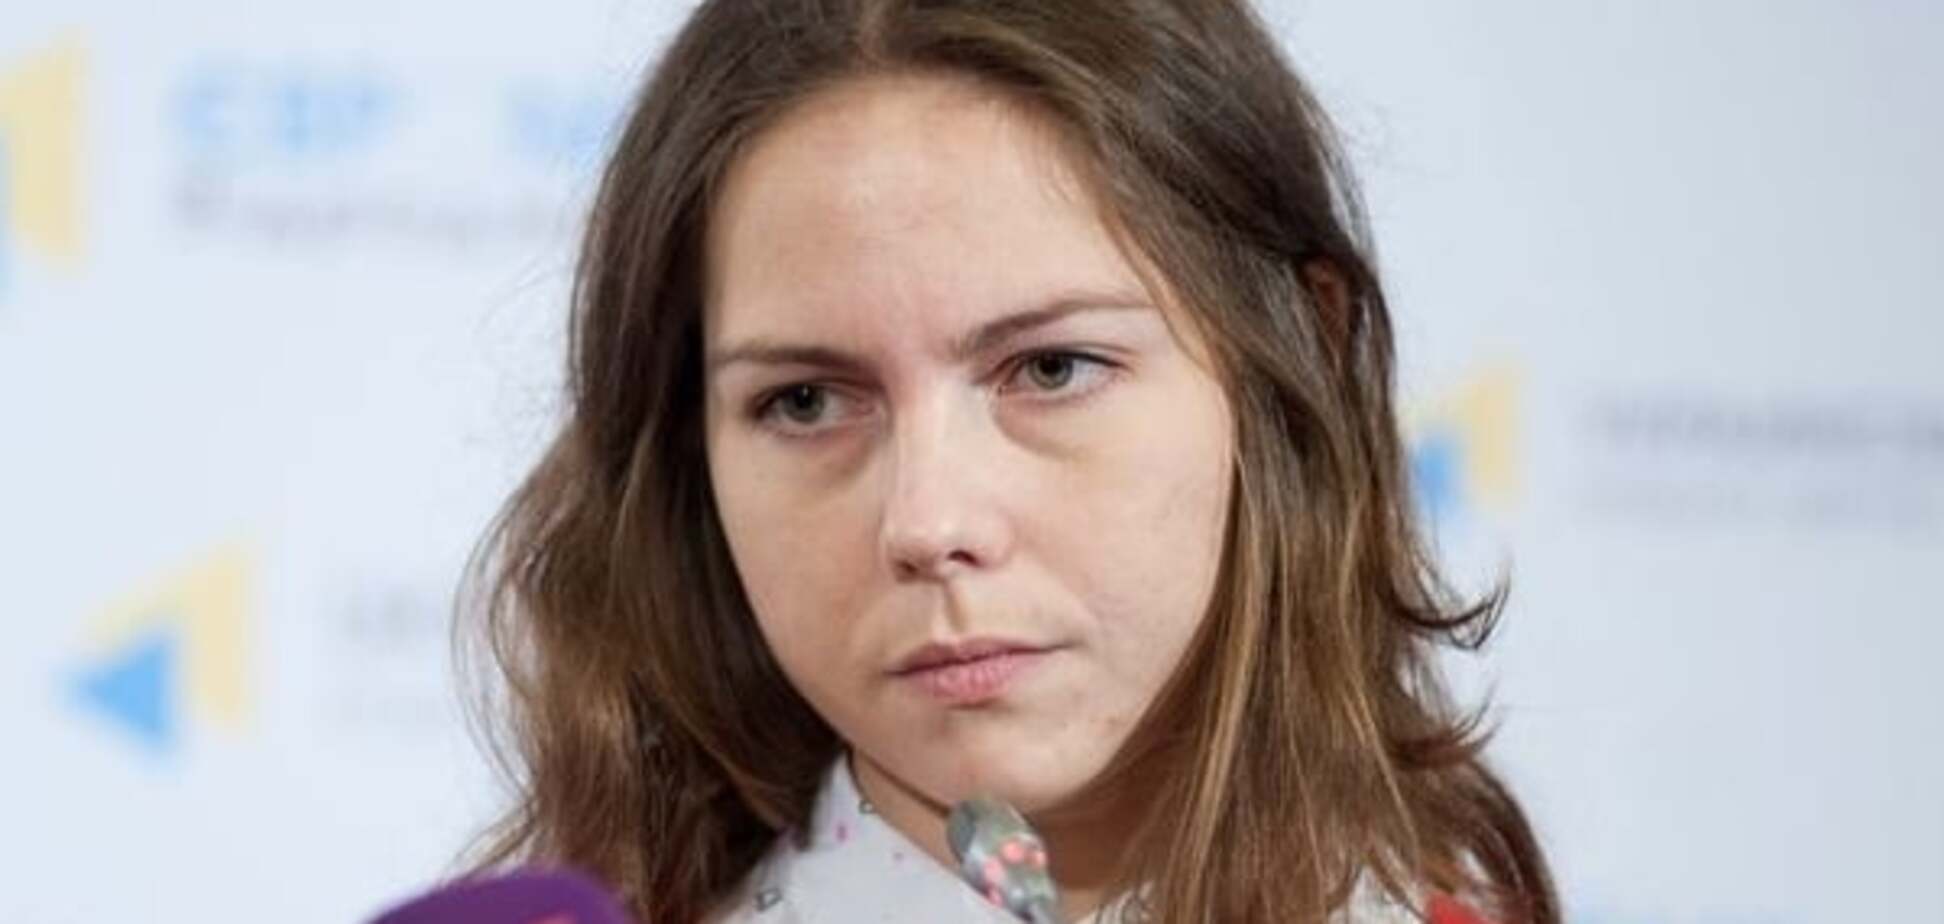 Сестра Савченко прогнозирует, что Наде 'светит' срок, как у Сенцова